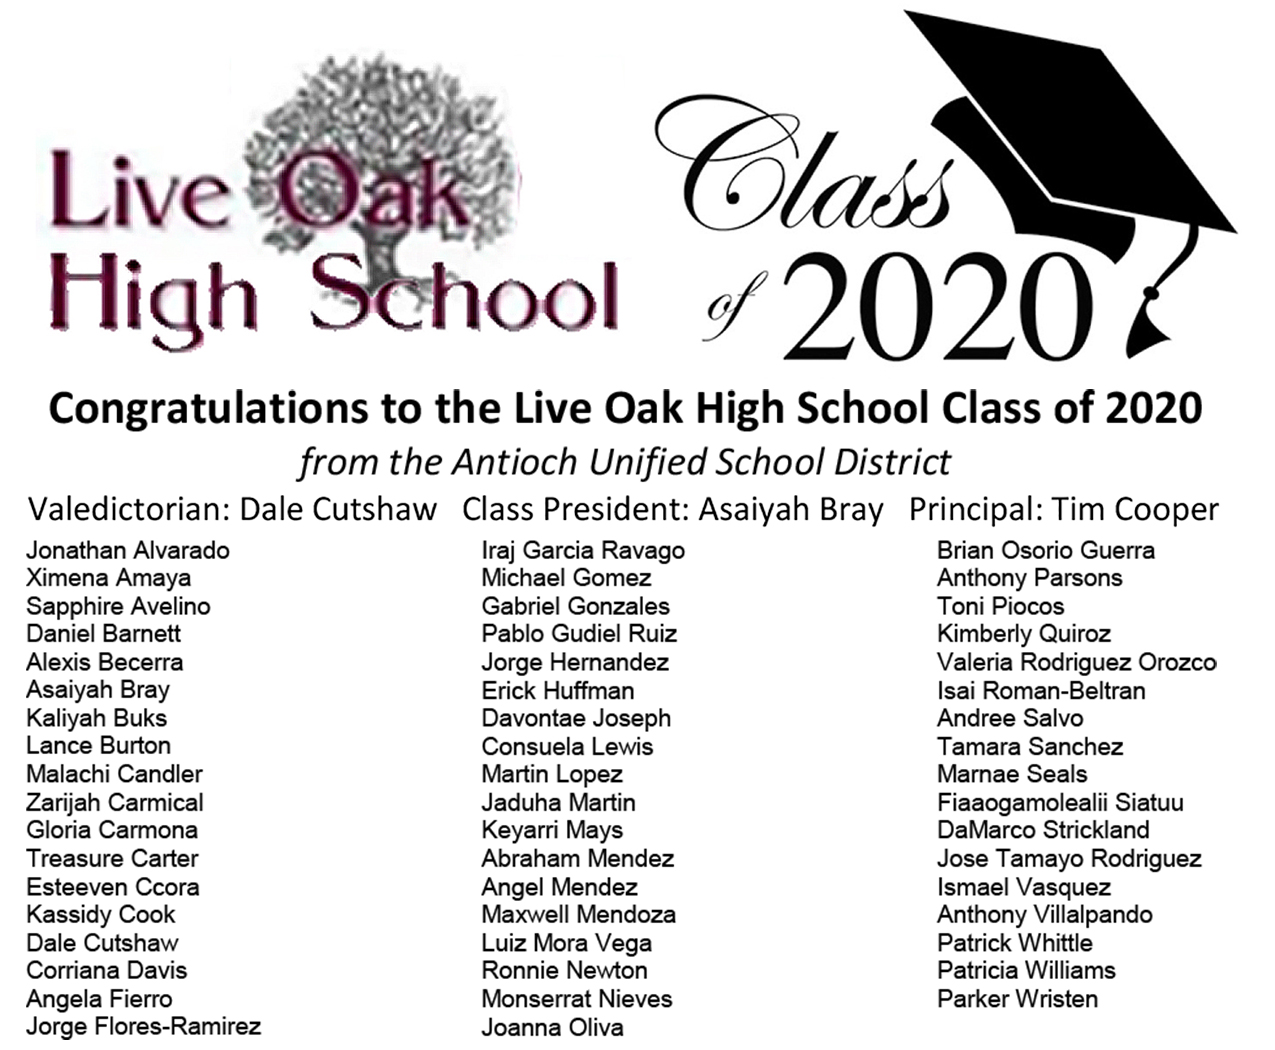 ausd-congratulates-the-live-oak-high-class-of-2020-see-list-of-graduates-antioch-herald